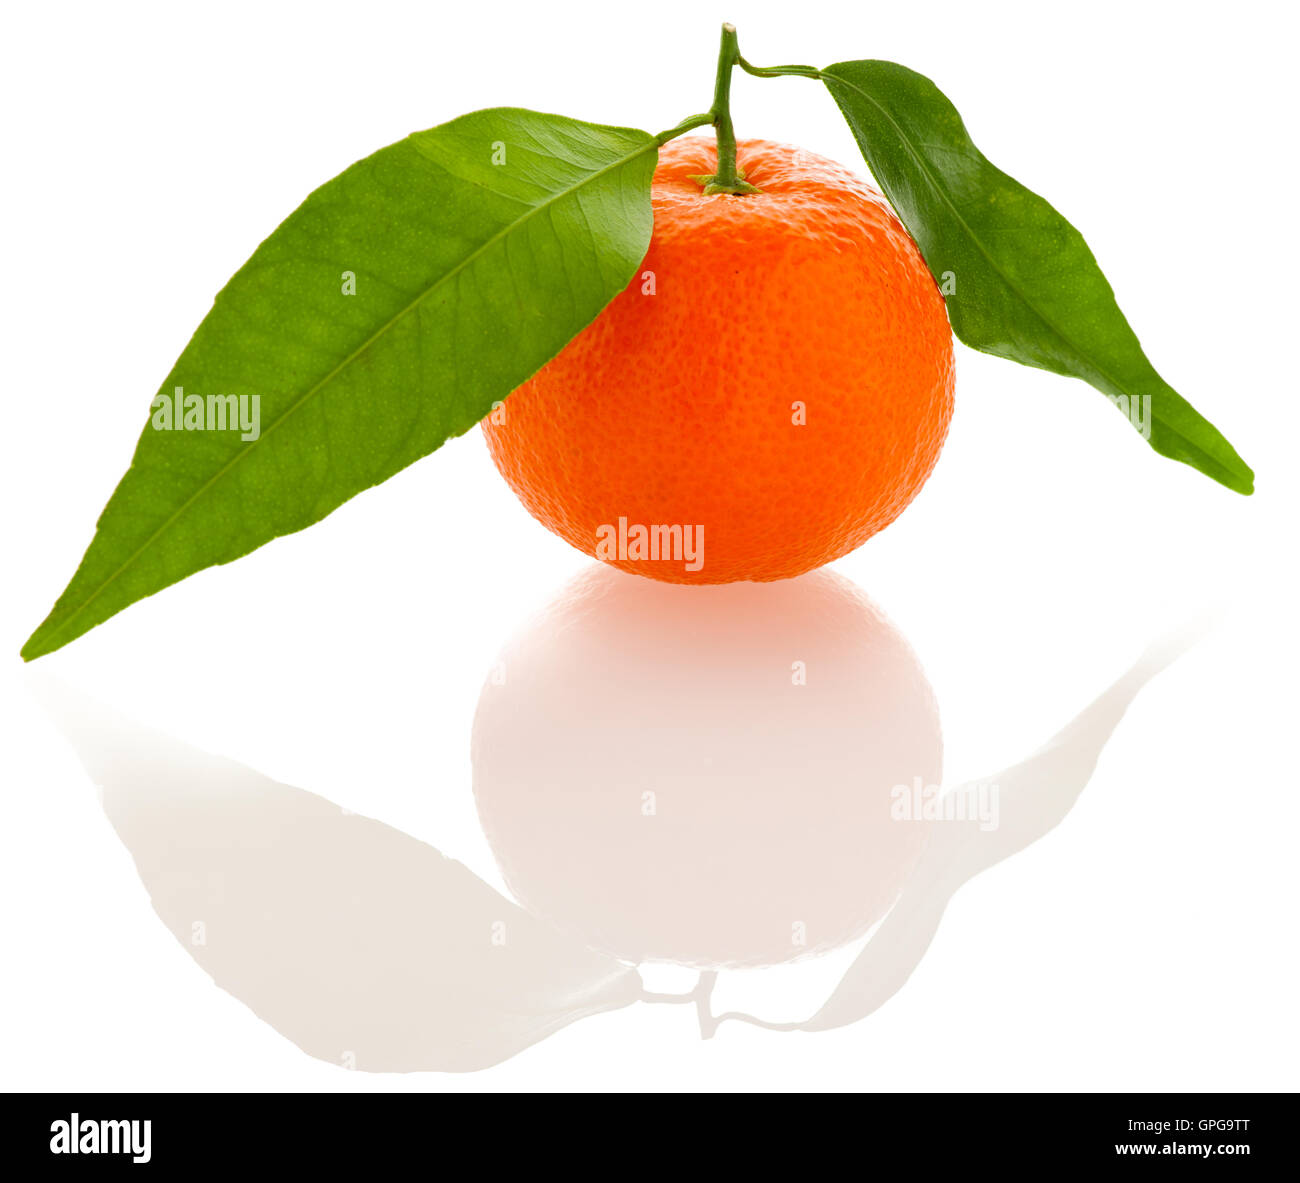 Agrumes mandarin orange fraîches non pelées avec feuilles vertes sur fond blanc isolé. Les vitamines naturelles doux savoureux. Banque D'Images